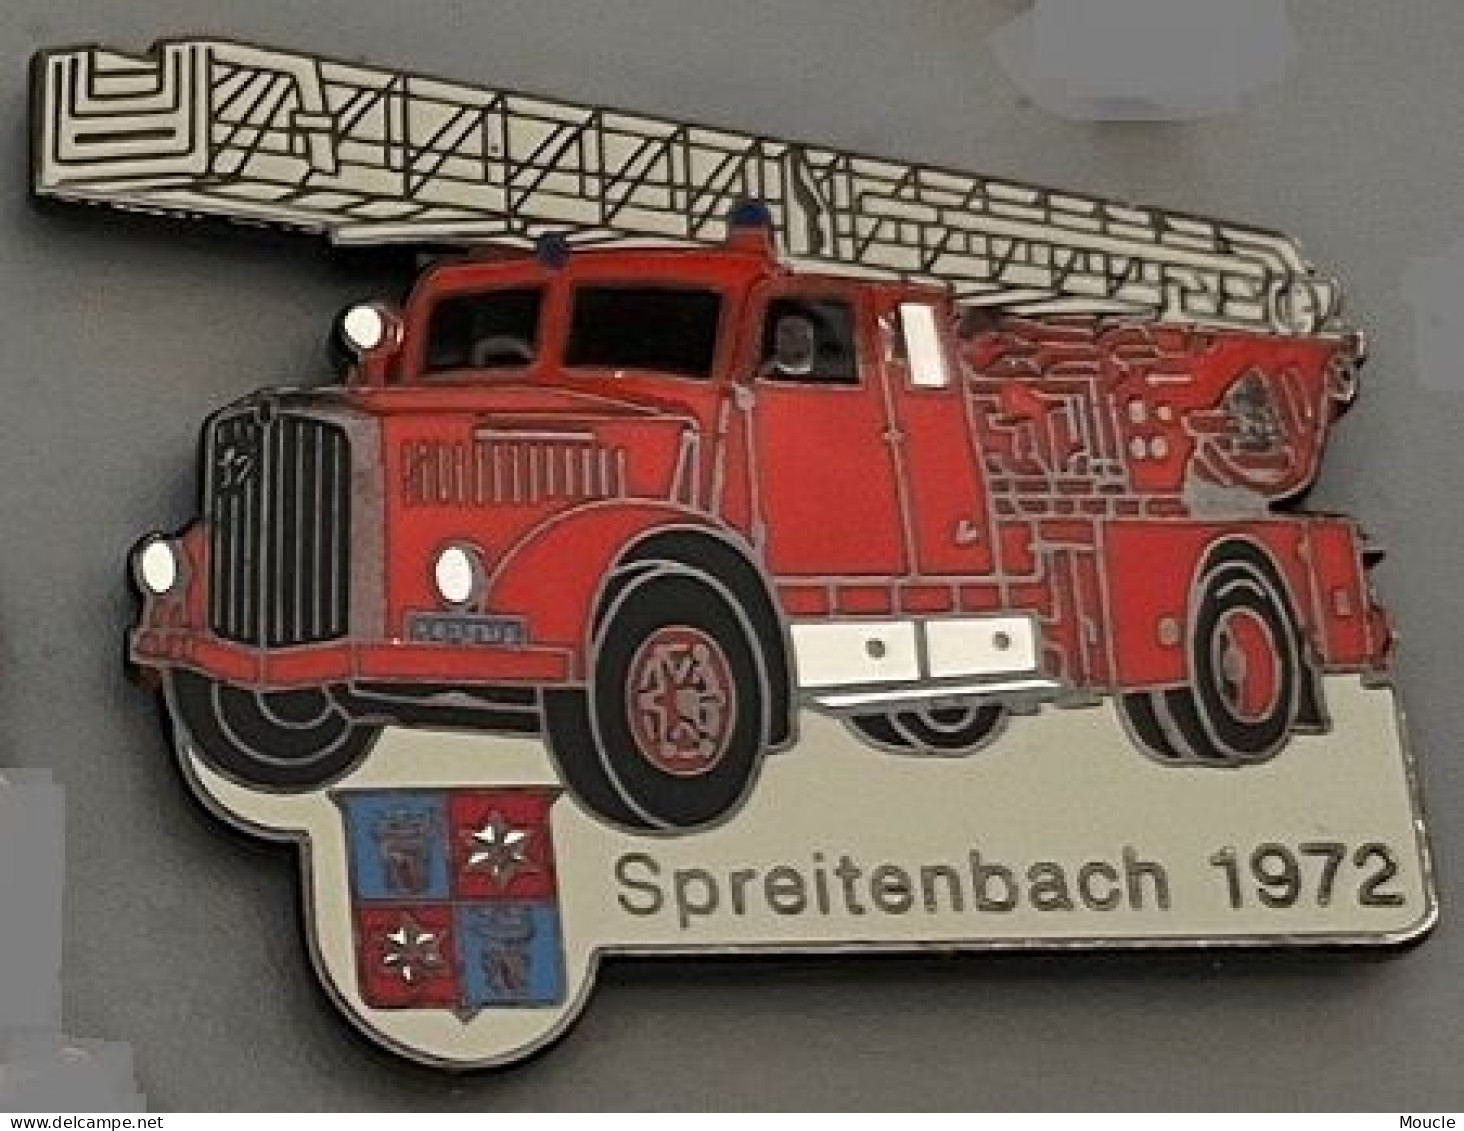 CAMION SAPEURS POMPIERS - SPREITENBACH 1972 - SUISSE - SCHWEIZ - TRUCK - FEUERWEHRMANN - FIREFIGHTER - EGF - N°372 -(32) - Firemen